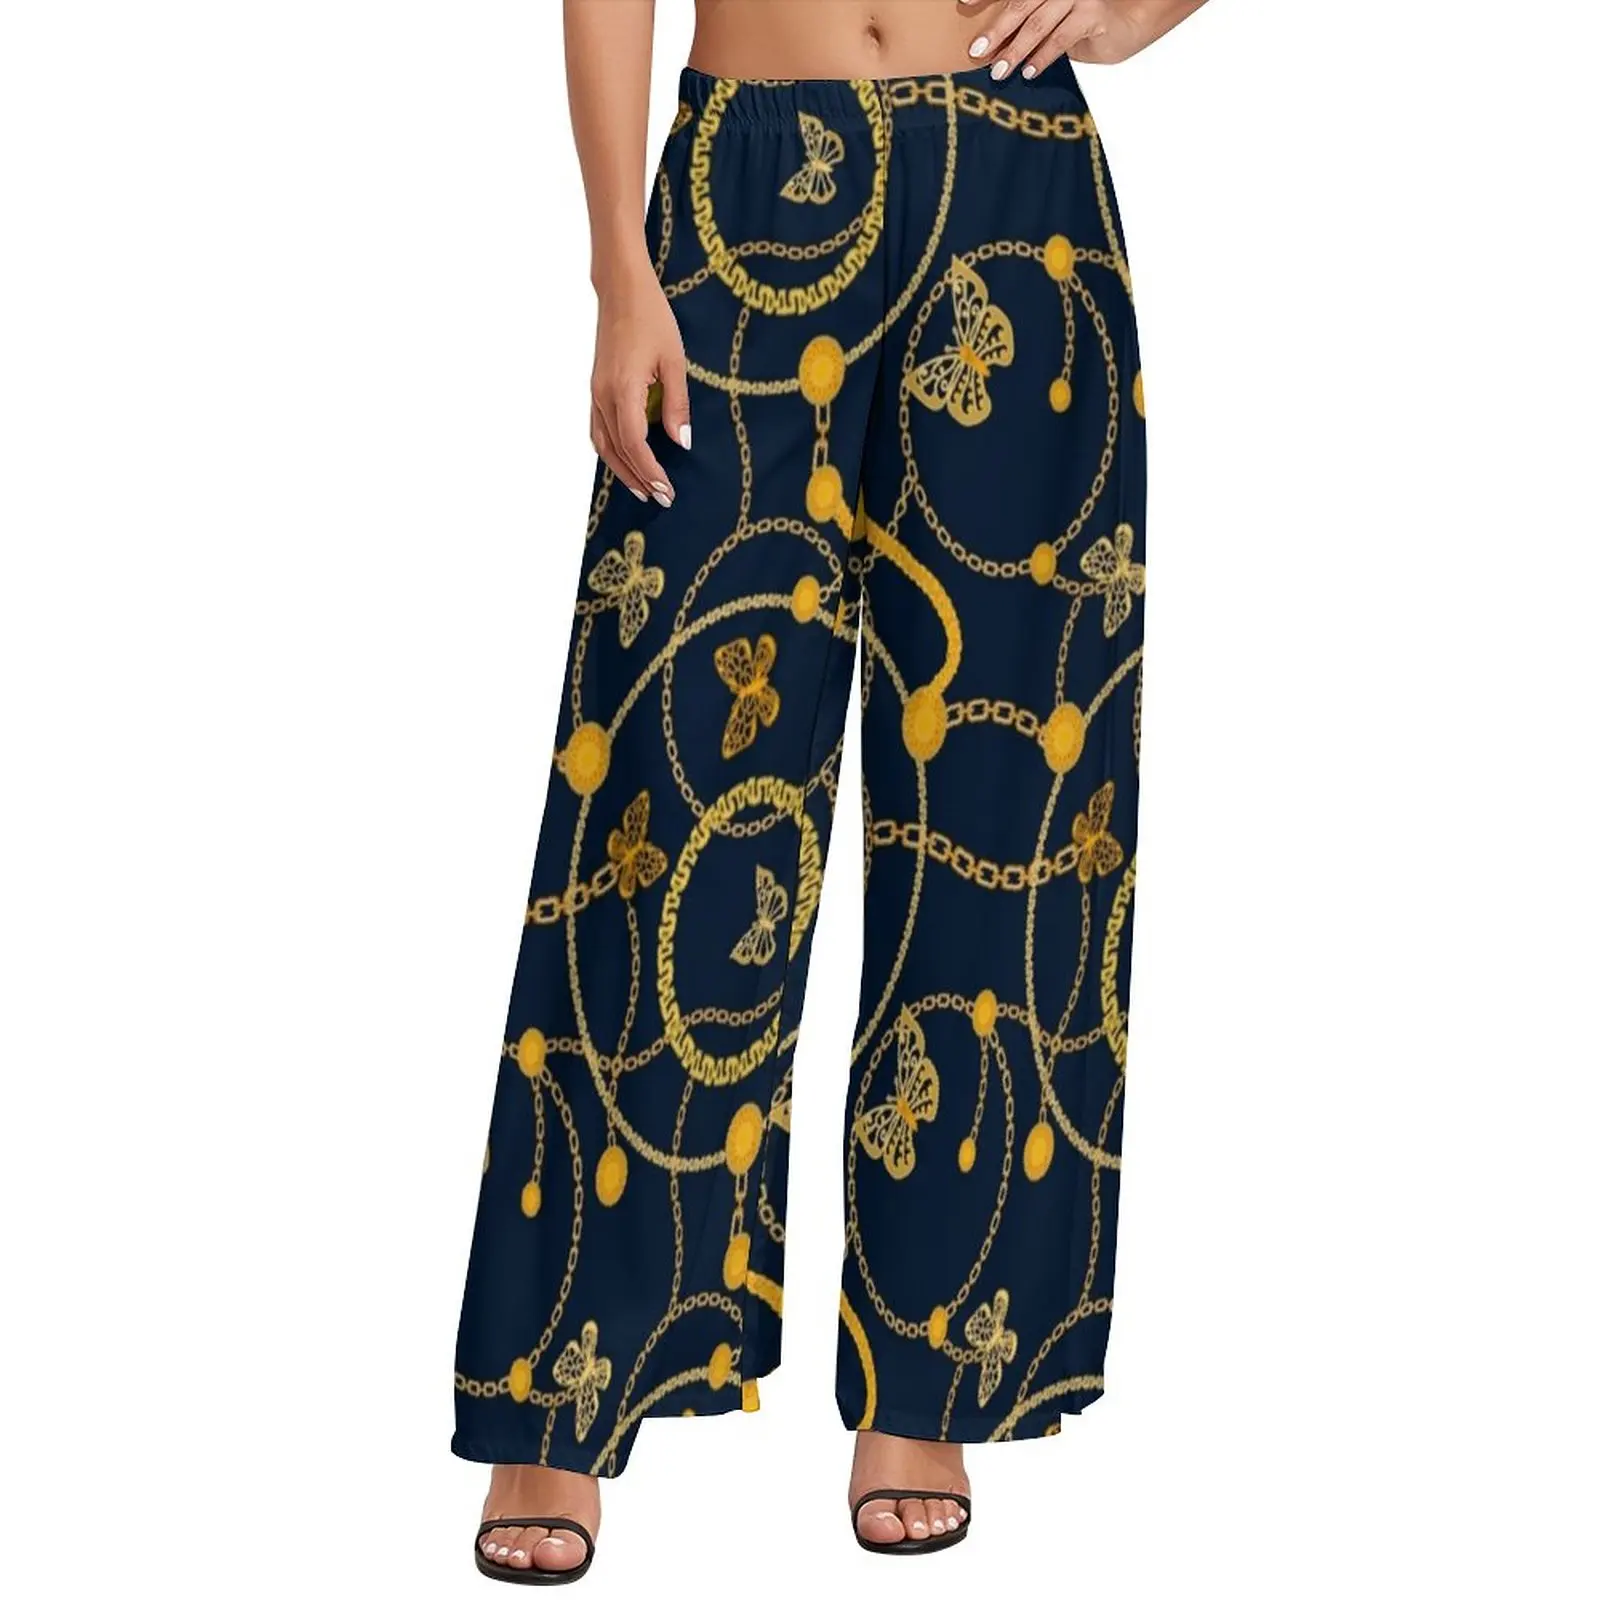 

Прямые брюки с принтом цепей, офисные широкие брюки с золотыми бабочками, женские уличные брюки большого размера на заказ